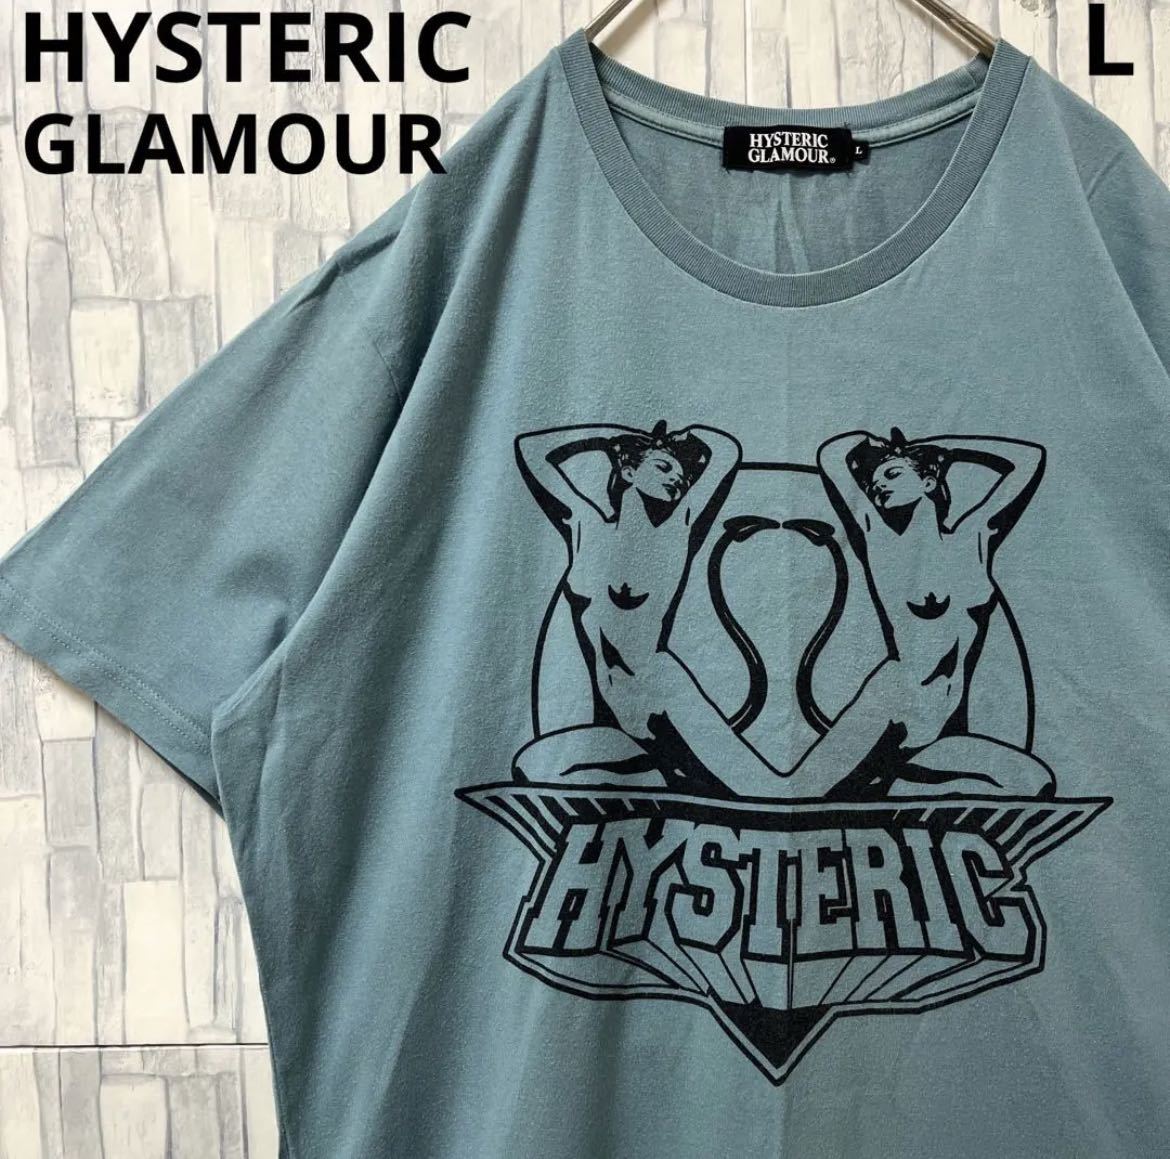 HYSTERIC GLAMOUR ヒステリックグラマー ヒスガール Tシャツ 半袖 サイズL デカロゴ ビッグロゴ くすみブルー 送料無料